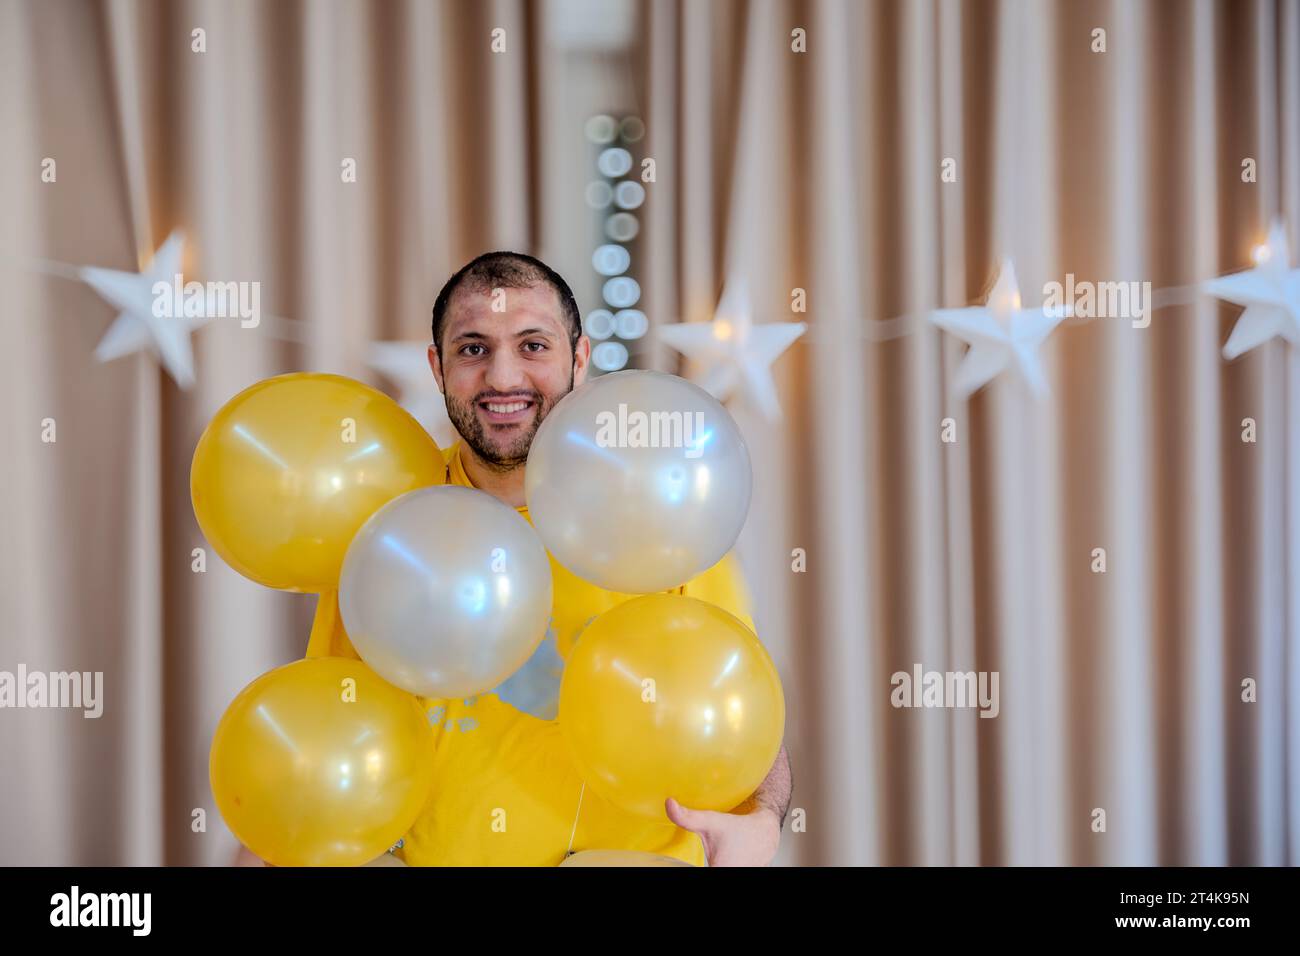 Parte globos plateados para decoración Fotografía de stock - Alamy